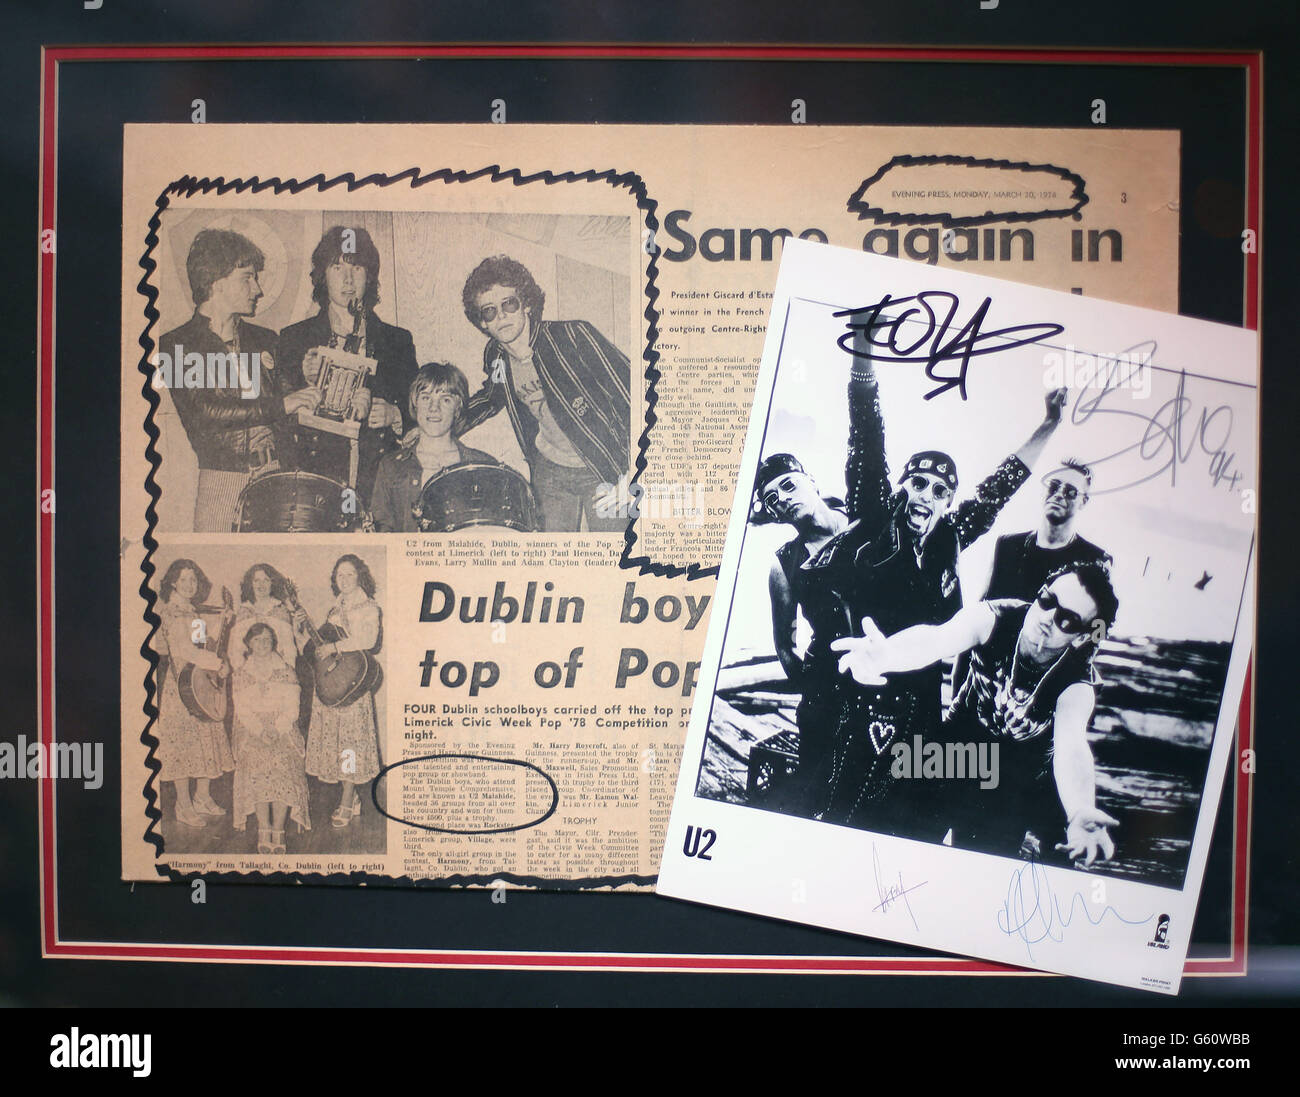 Ein Ausschnitt aus dem Jahr 1978 aus der Evening Press, der die erste Erwähnung von U2 in der Presse auf einer Fotowand darstellt, um die Rock- und Pop-Erinnerungsstücke zu markieren, die Whyte heute auf der 37 Dawson Street in Dublin versteigert hat. Stockfoto